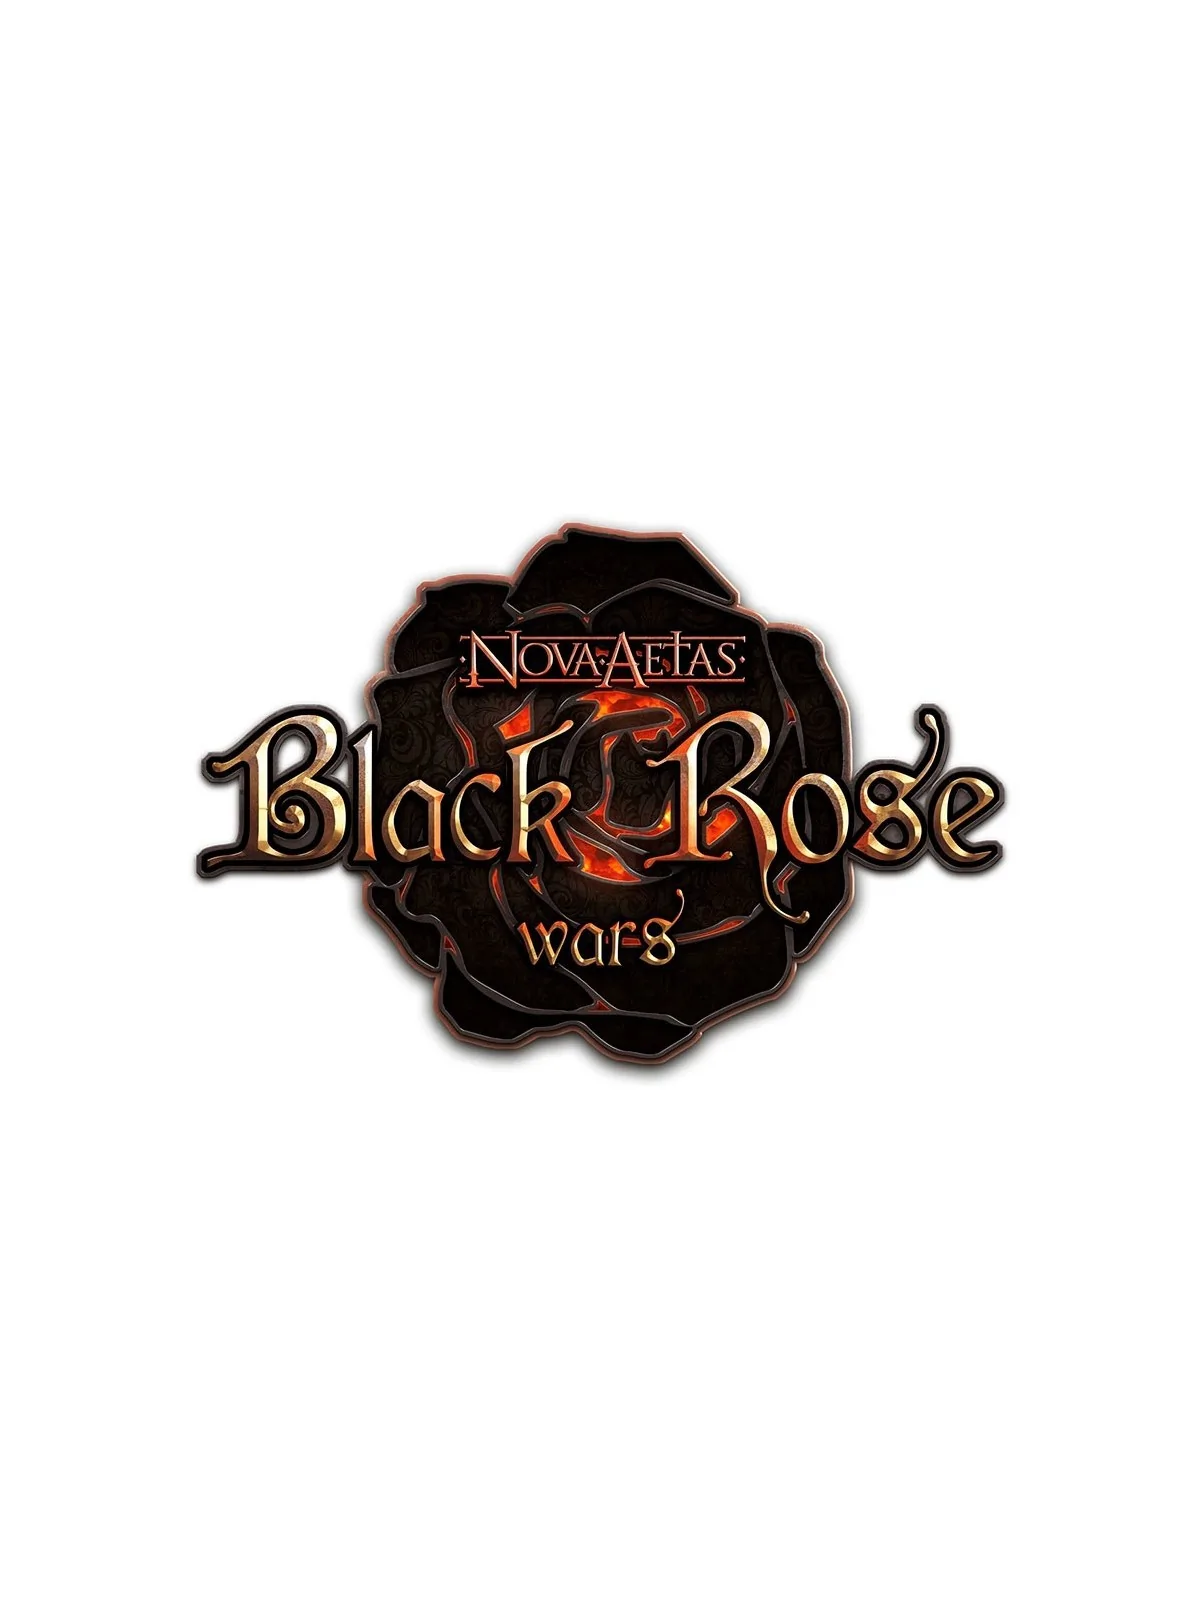 Comprar Black Rose Wars Draco Pet barato al mejor precio 13,46 € de La